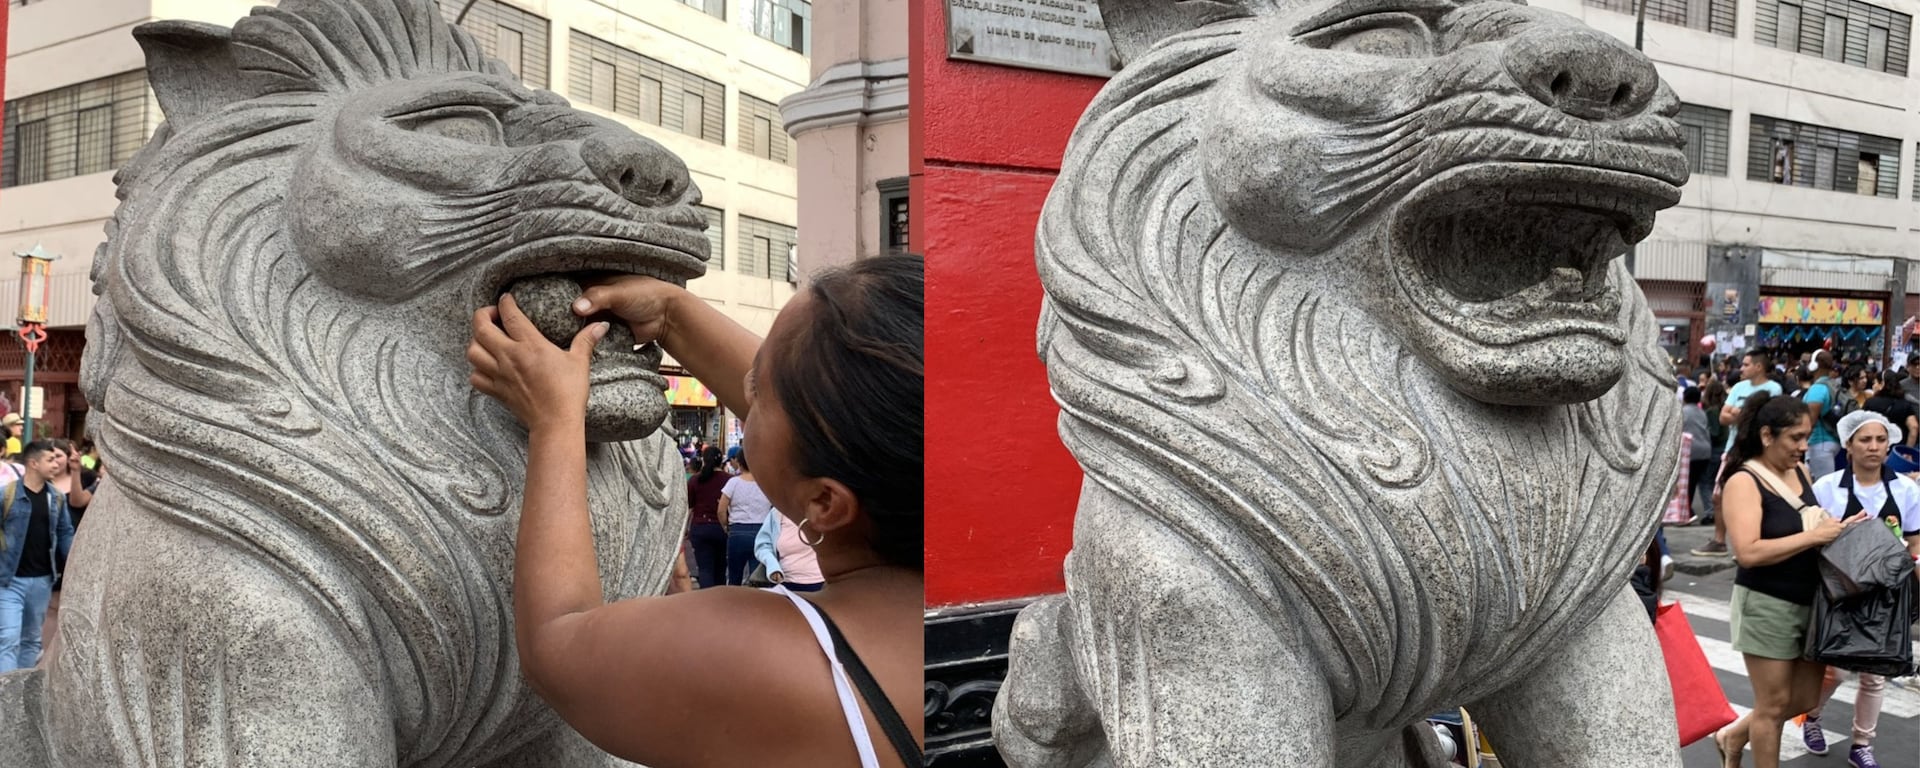 Calle Capón: esferas de los Leones Fu desaparecen y esculturas sufren daños tras reto viral de TikTok